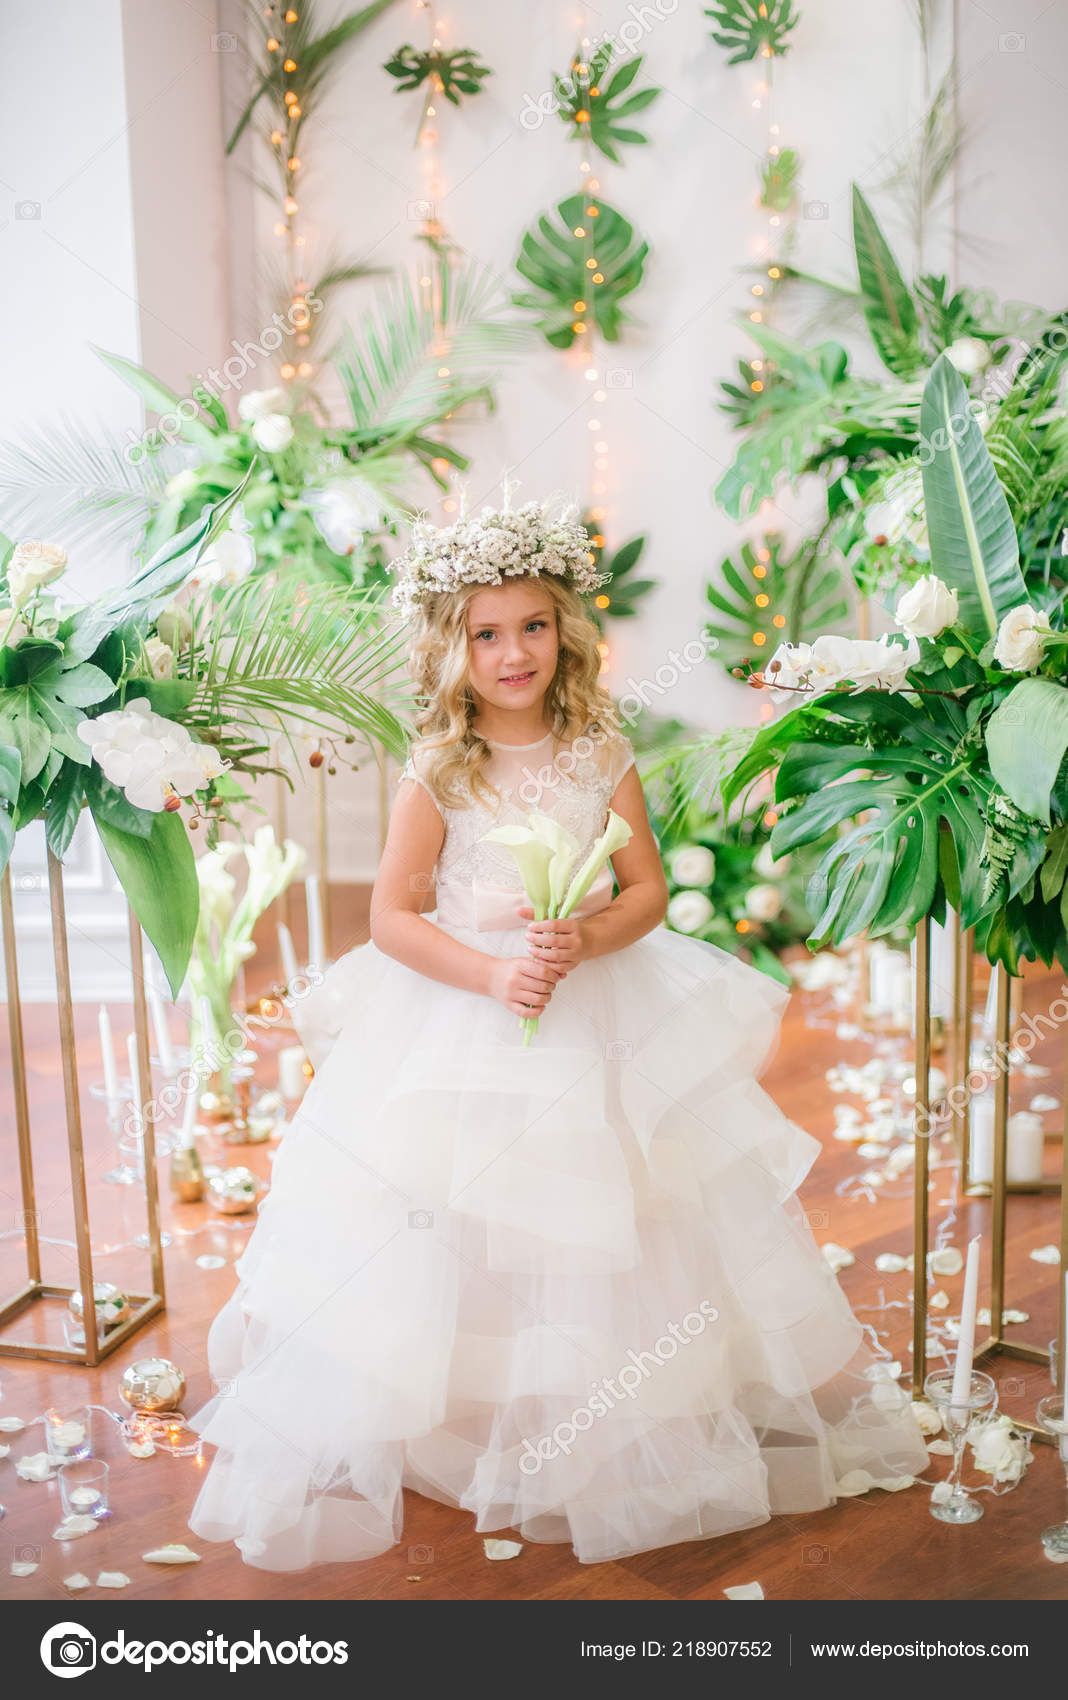 little girl white wedding dresses